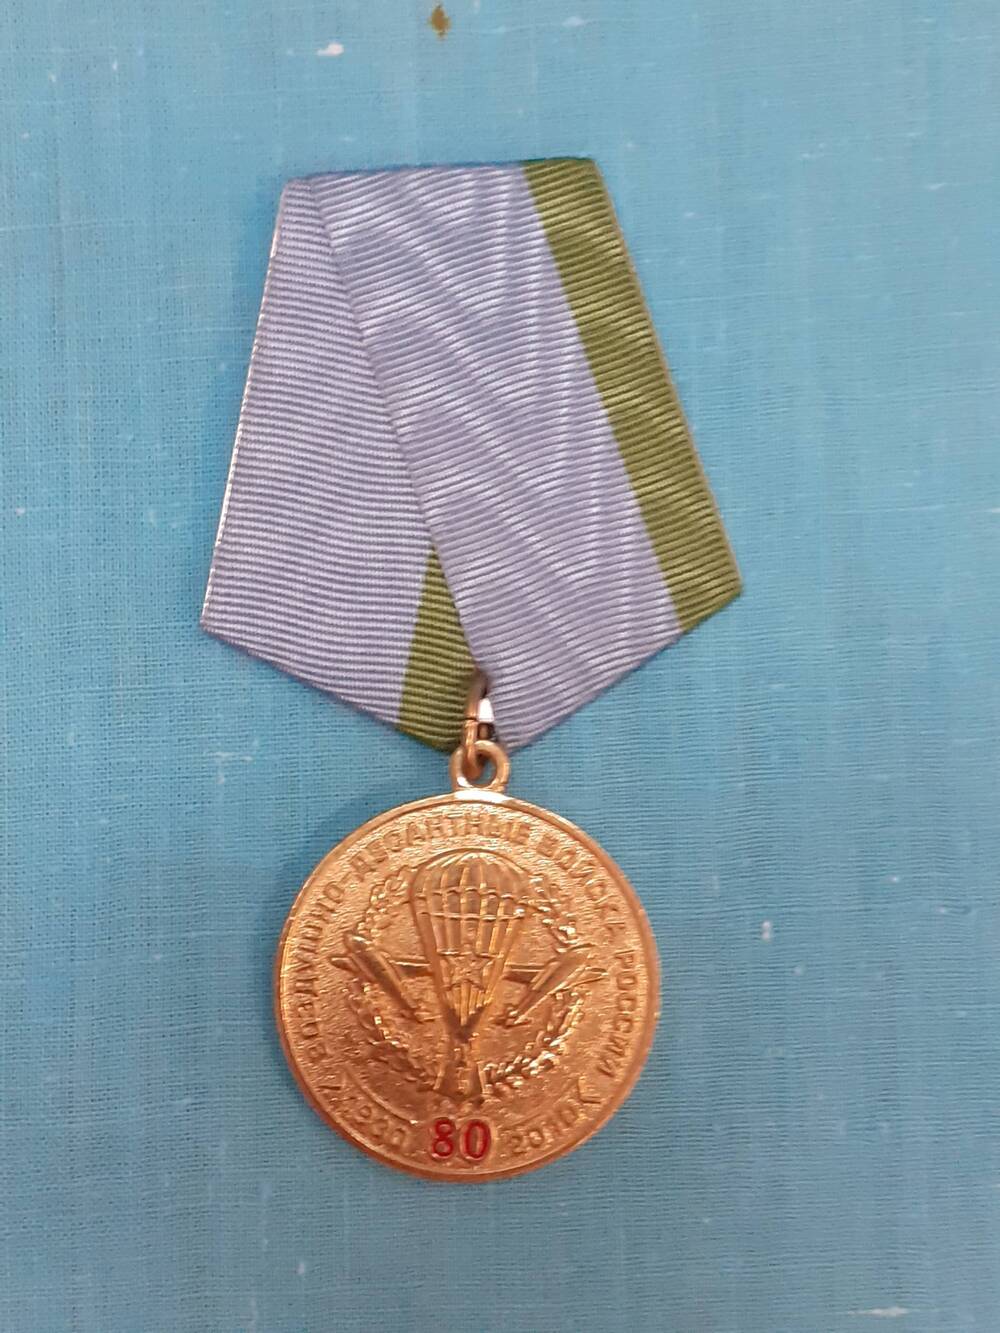 Медаль 80 лет Воздушно-десантным войскам России 1930-2010 гг. Турушкина Н.И.